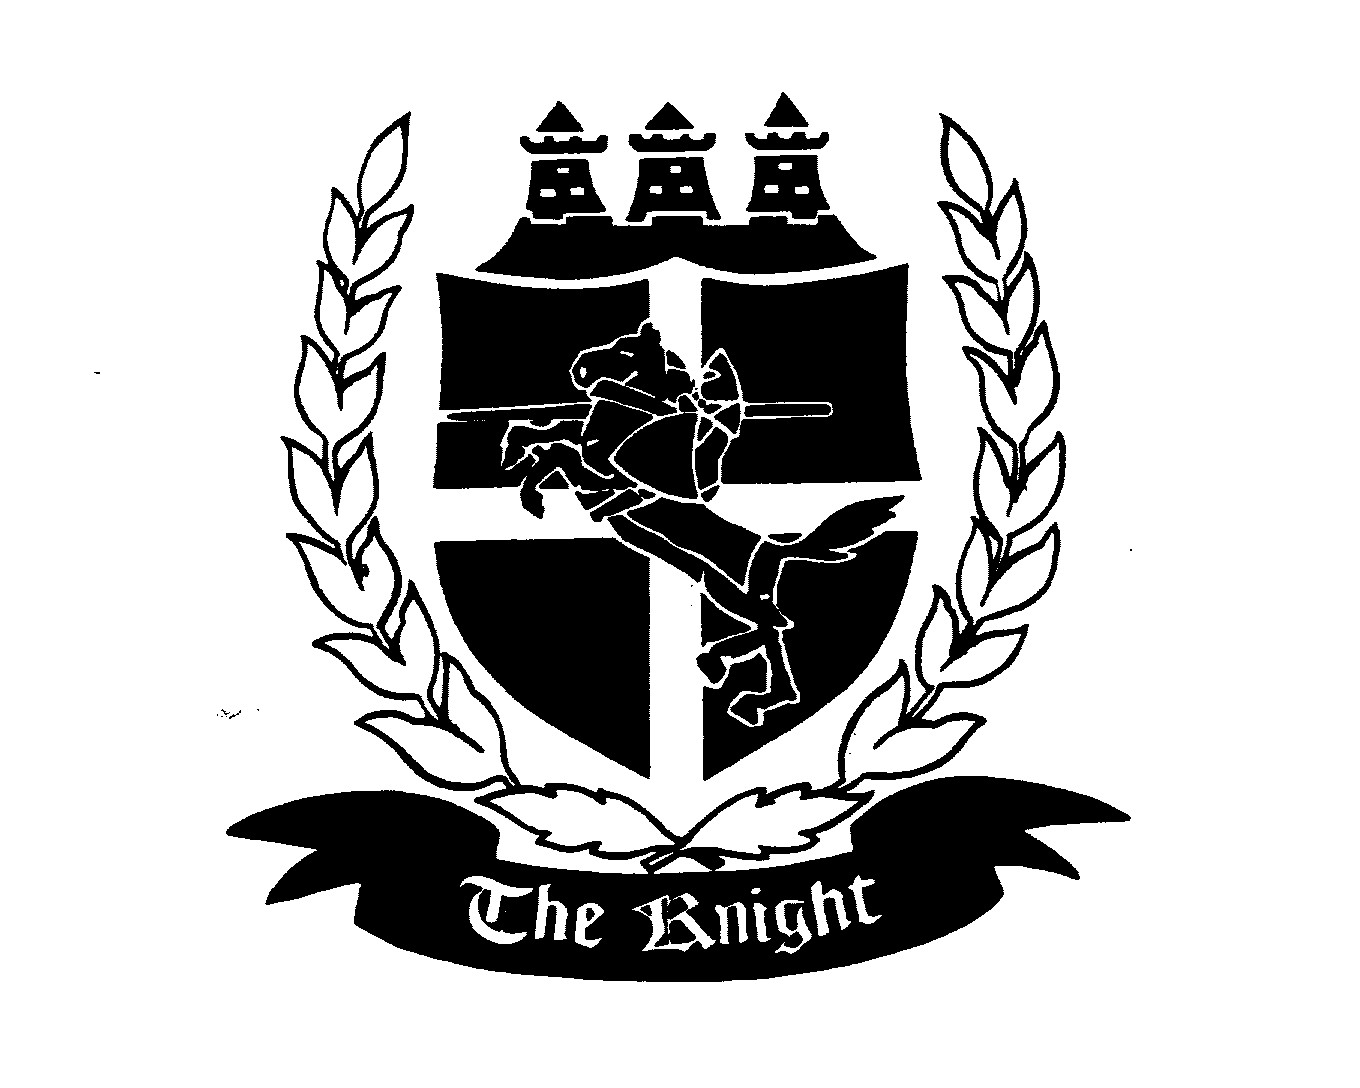 Trademark Logo THE KNIGHT